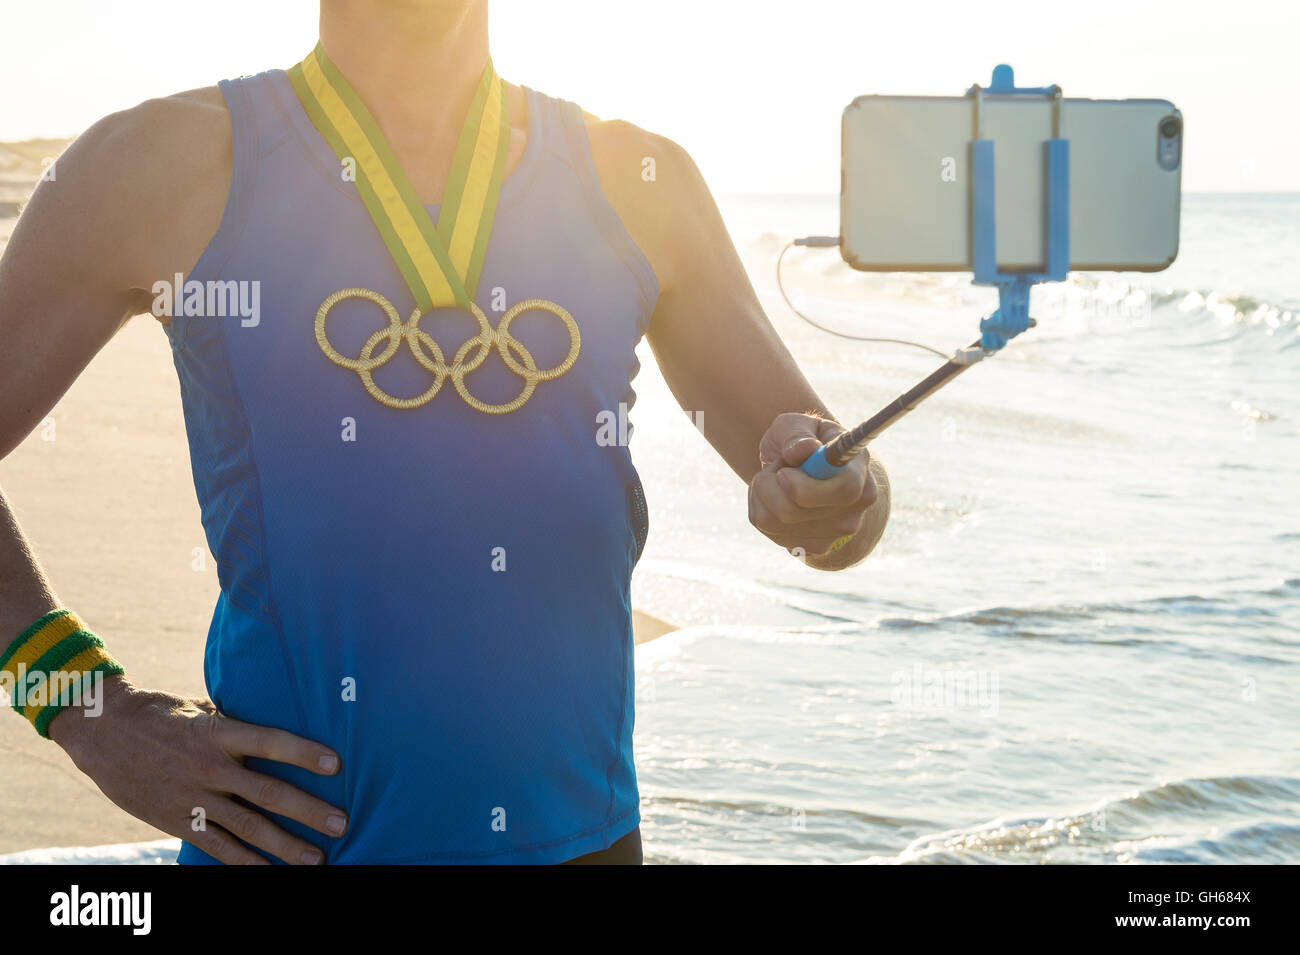 RIO DE JANEIRO - 10. März 2016: Sportler mit Olympischen Ringen Goldmedaille steht unter einem Selfie am Sonnenaufgang Strand. Stockfoto